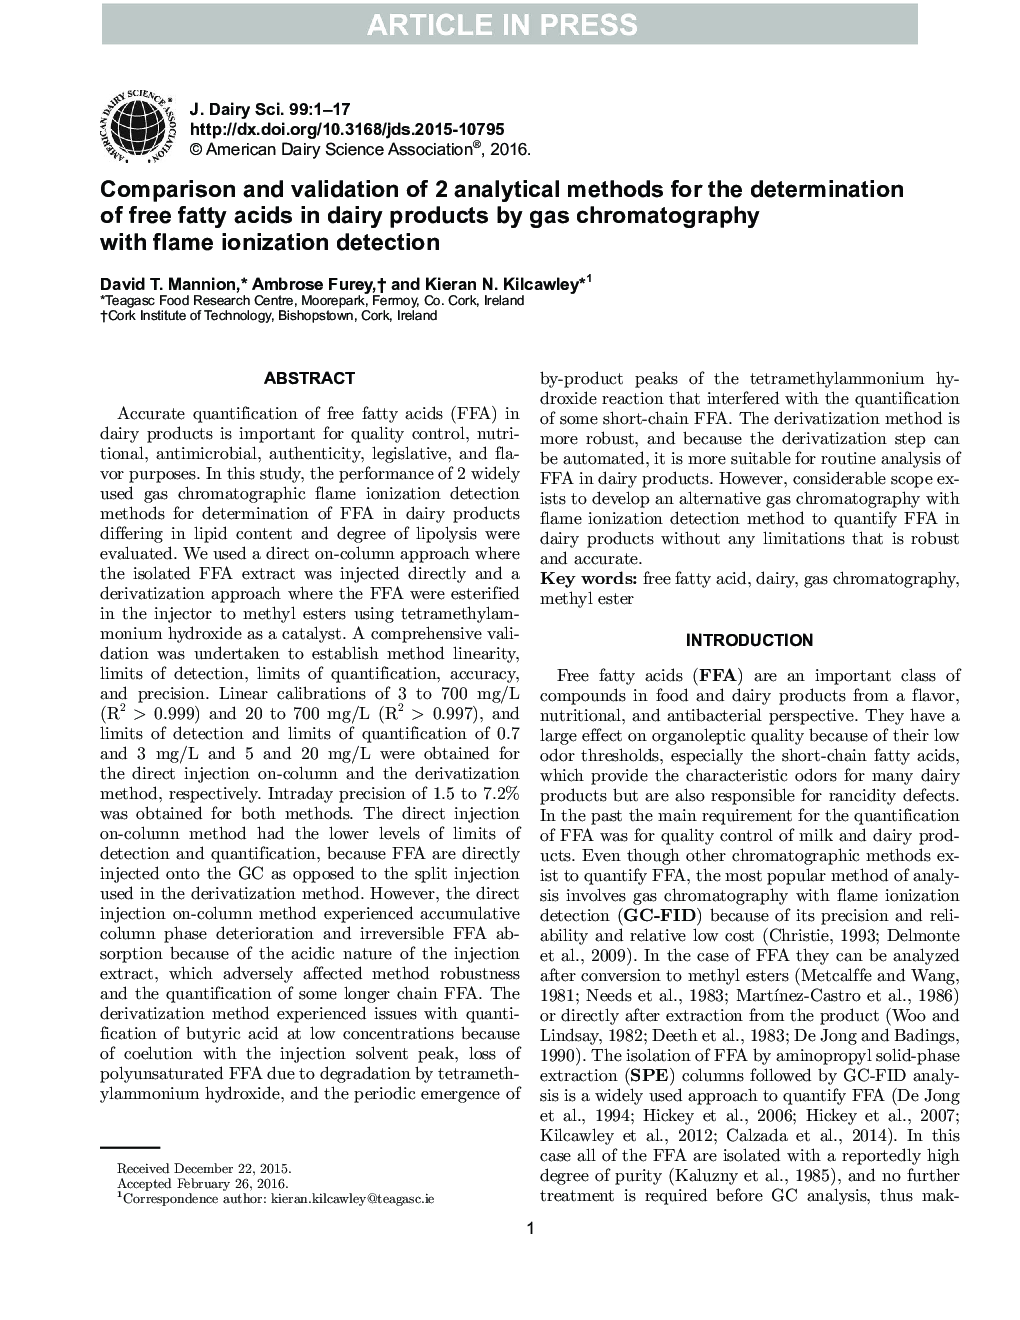 مقایسه و اعتبار 2 روش تحلیلی برای تعیین اسیدهای چرب آزاد در محصولات لبنی توسط کروماتوگرافی گاز با تشخیص یونیزاسیون شعله 